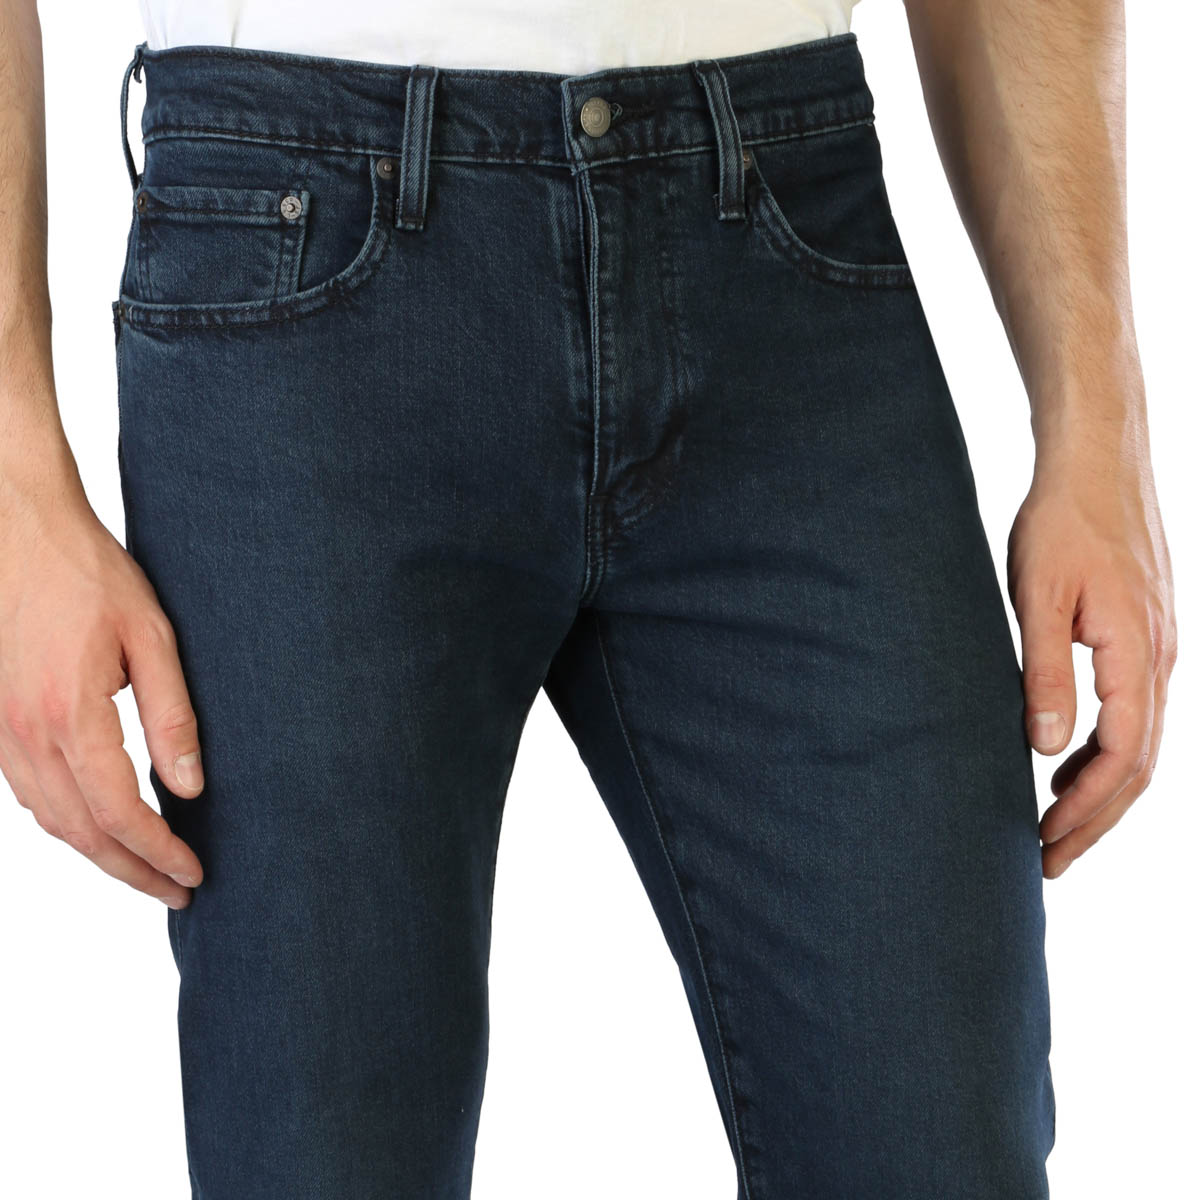 Levi's Blue Jeans for Men - 502